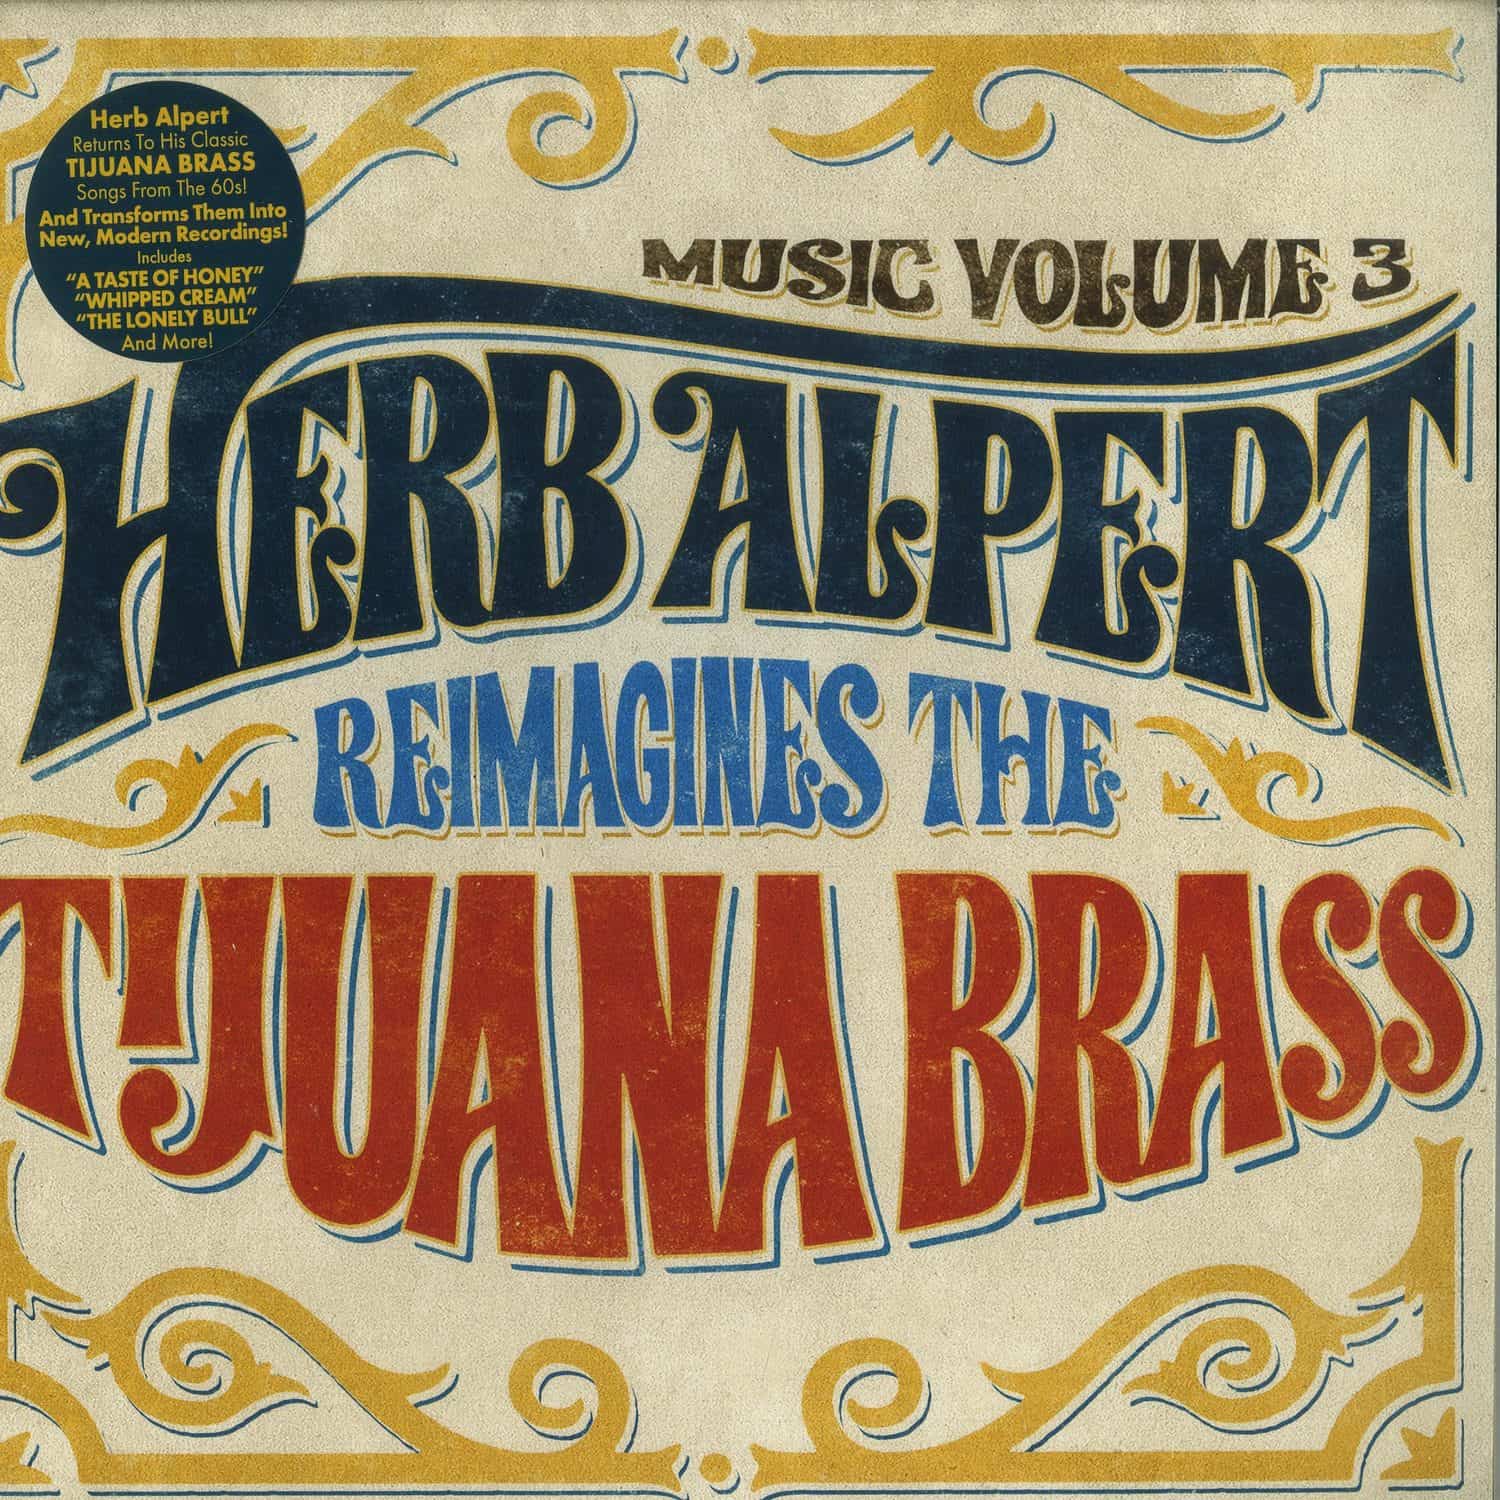 Herb Alpert - MUSIC VOLUME 3: HERB ALPERT REIMAGINES THE TIJUANA BRASS 